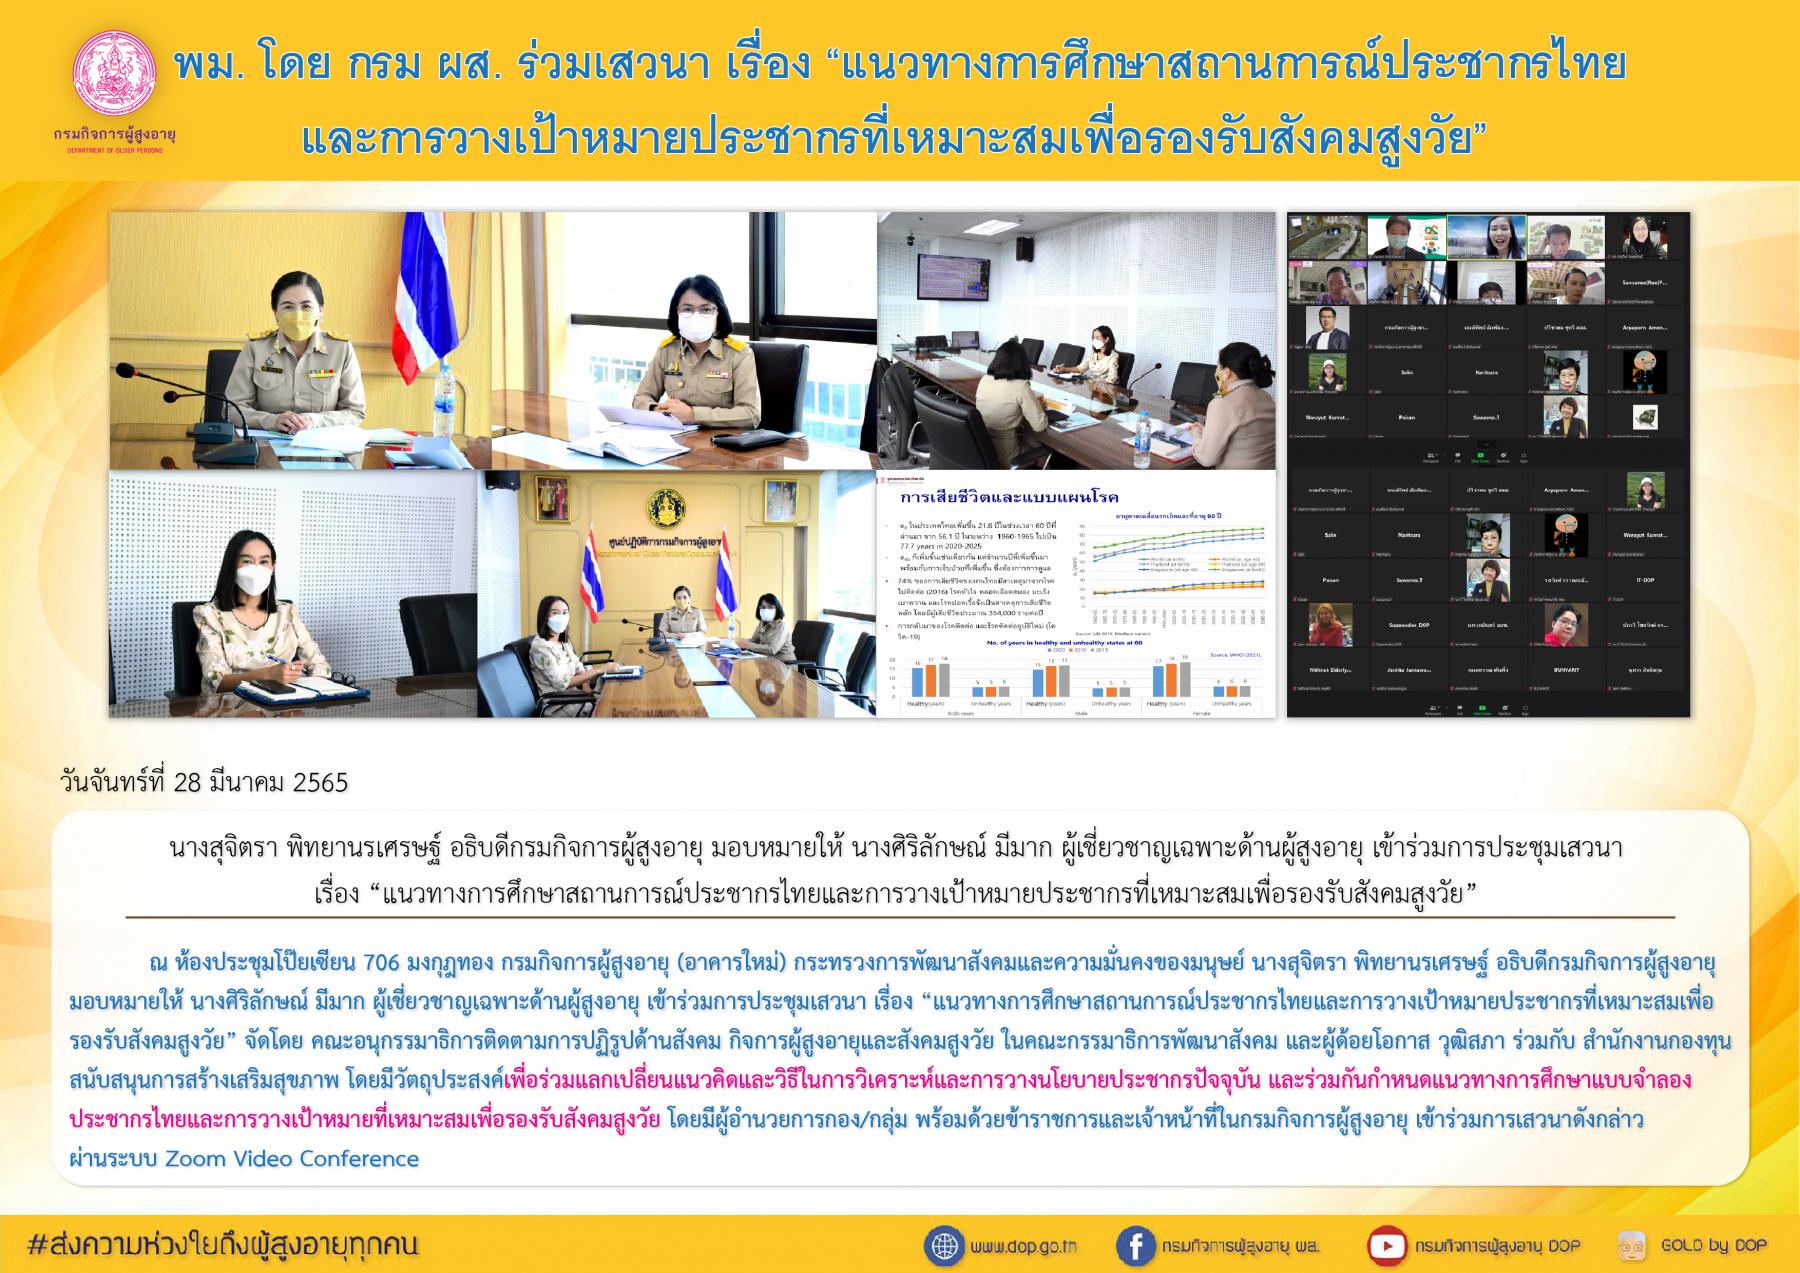 พม. โดย กรม ผส. ร่วมเสวนา เรื่อง “แนวทางการศึกษาสถานการณ์ประชากรไทยและการวางเป้าหมายประชากรที่เหมาะสมเพื่อรองรับสังคมสูงวัย”